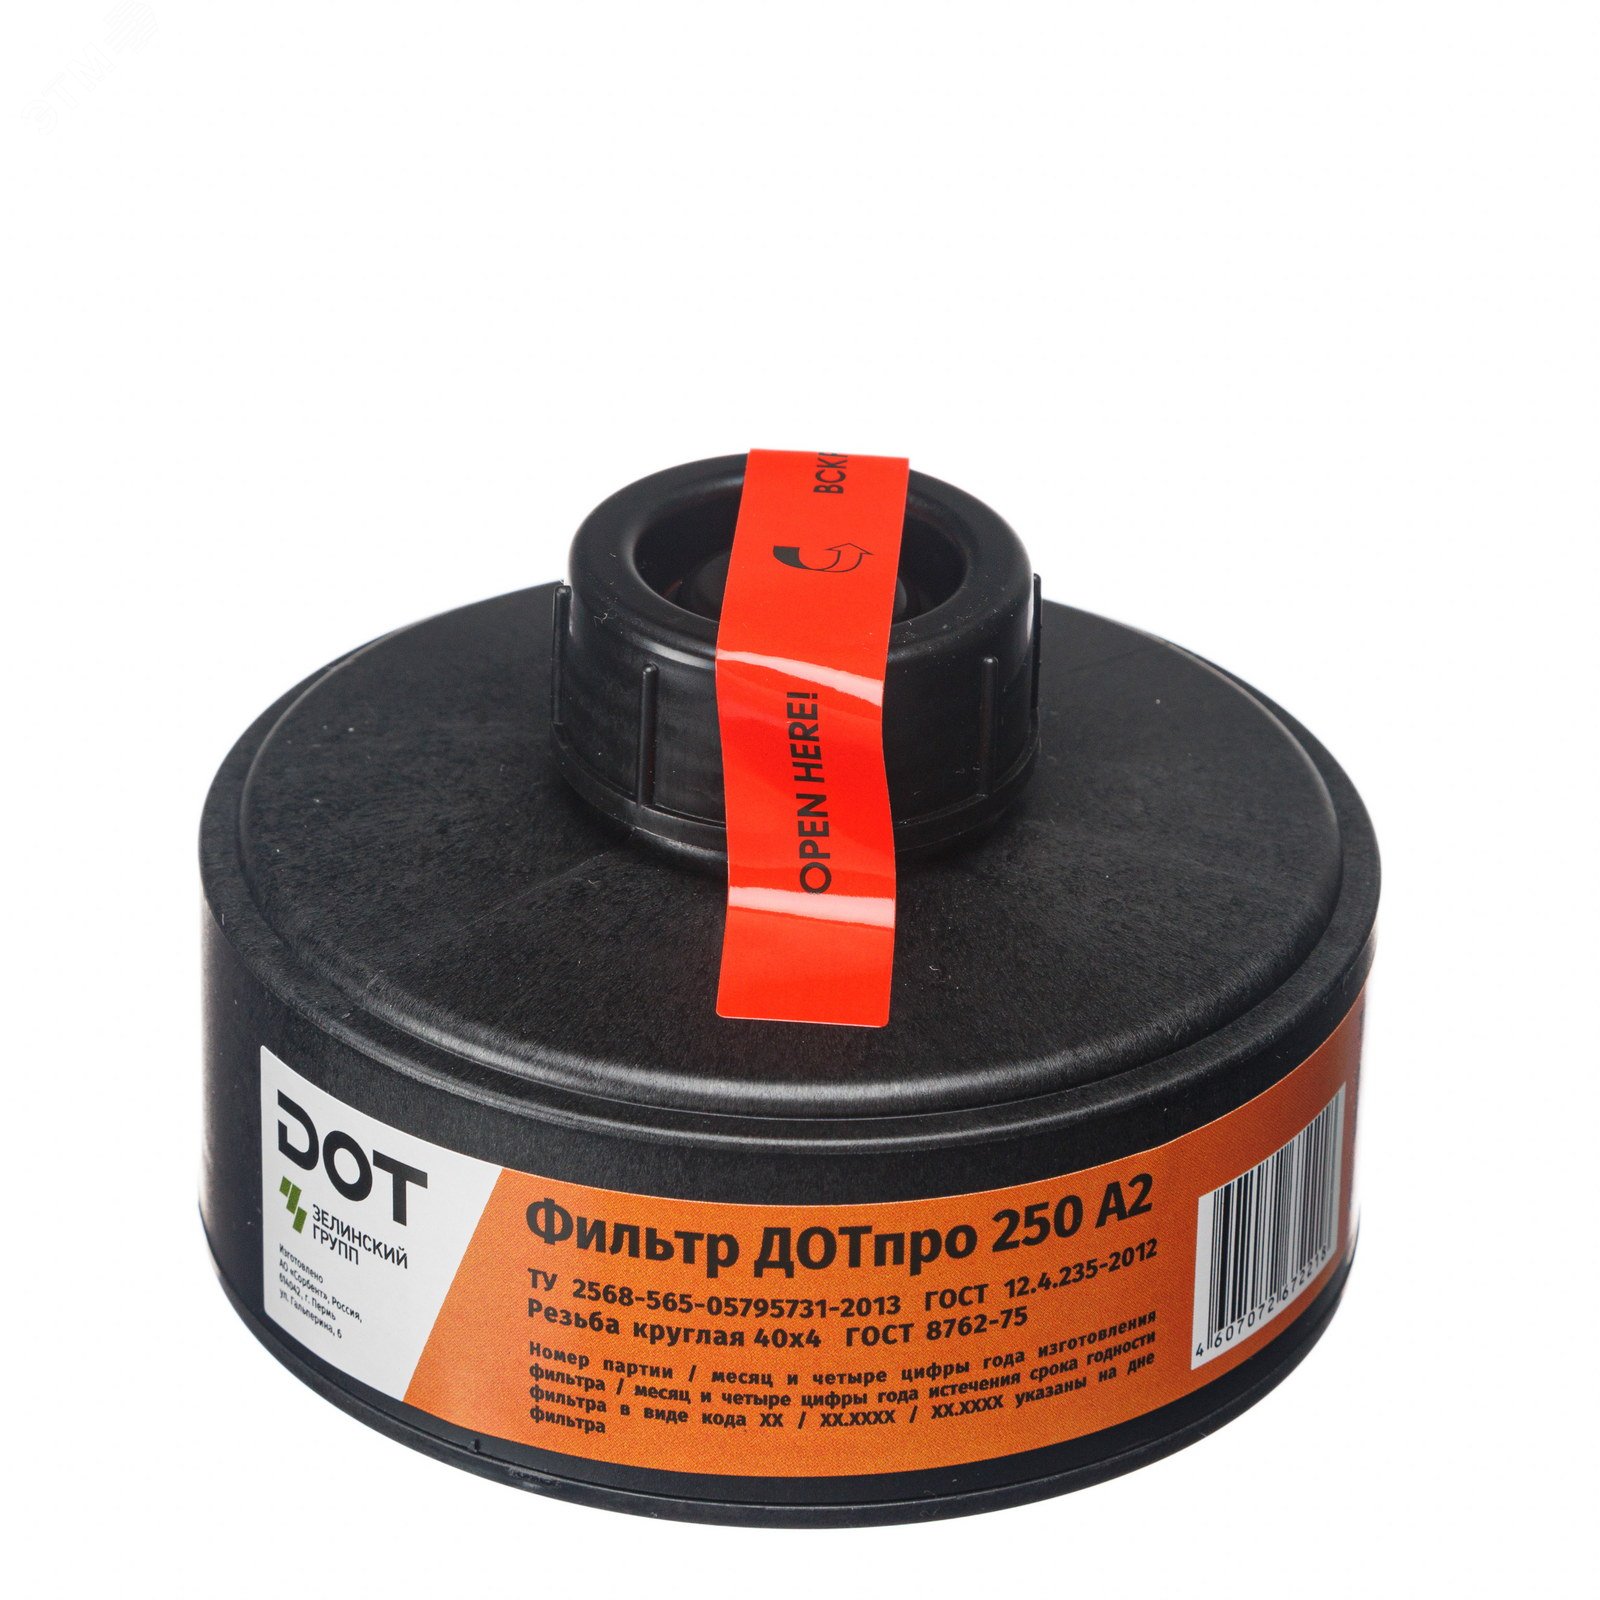 Фильтр противогазовый ДОТпро 250 марки А2 102-011-0044 Зелинский Групп - превью